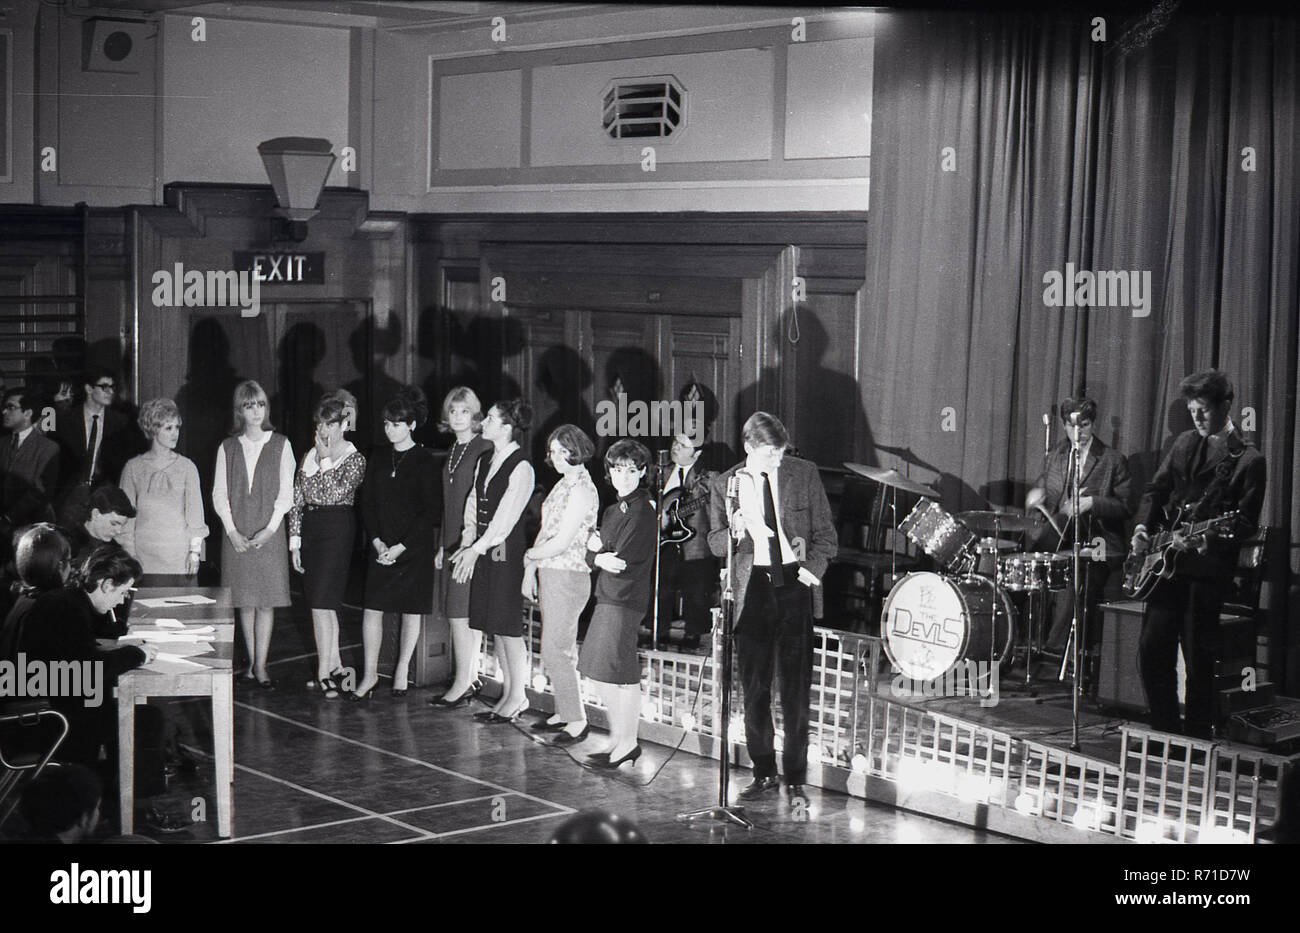 Historique des années 60, la musique, les auditions, les jeunes femmes ayant une audition de chanteuse dans un lieu, avec une bande ou un groupe sur une scène. Banque D'Images